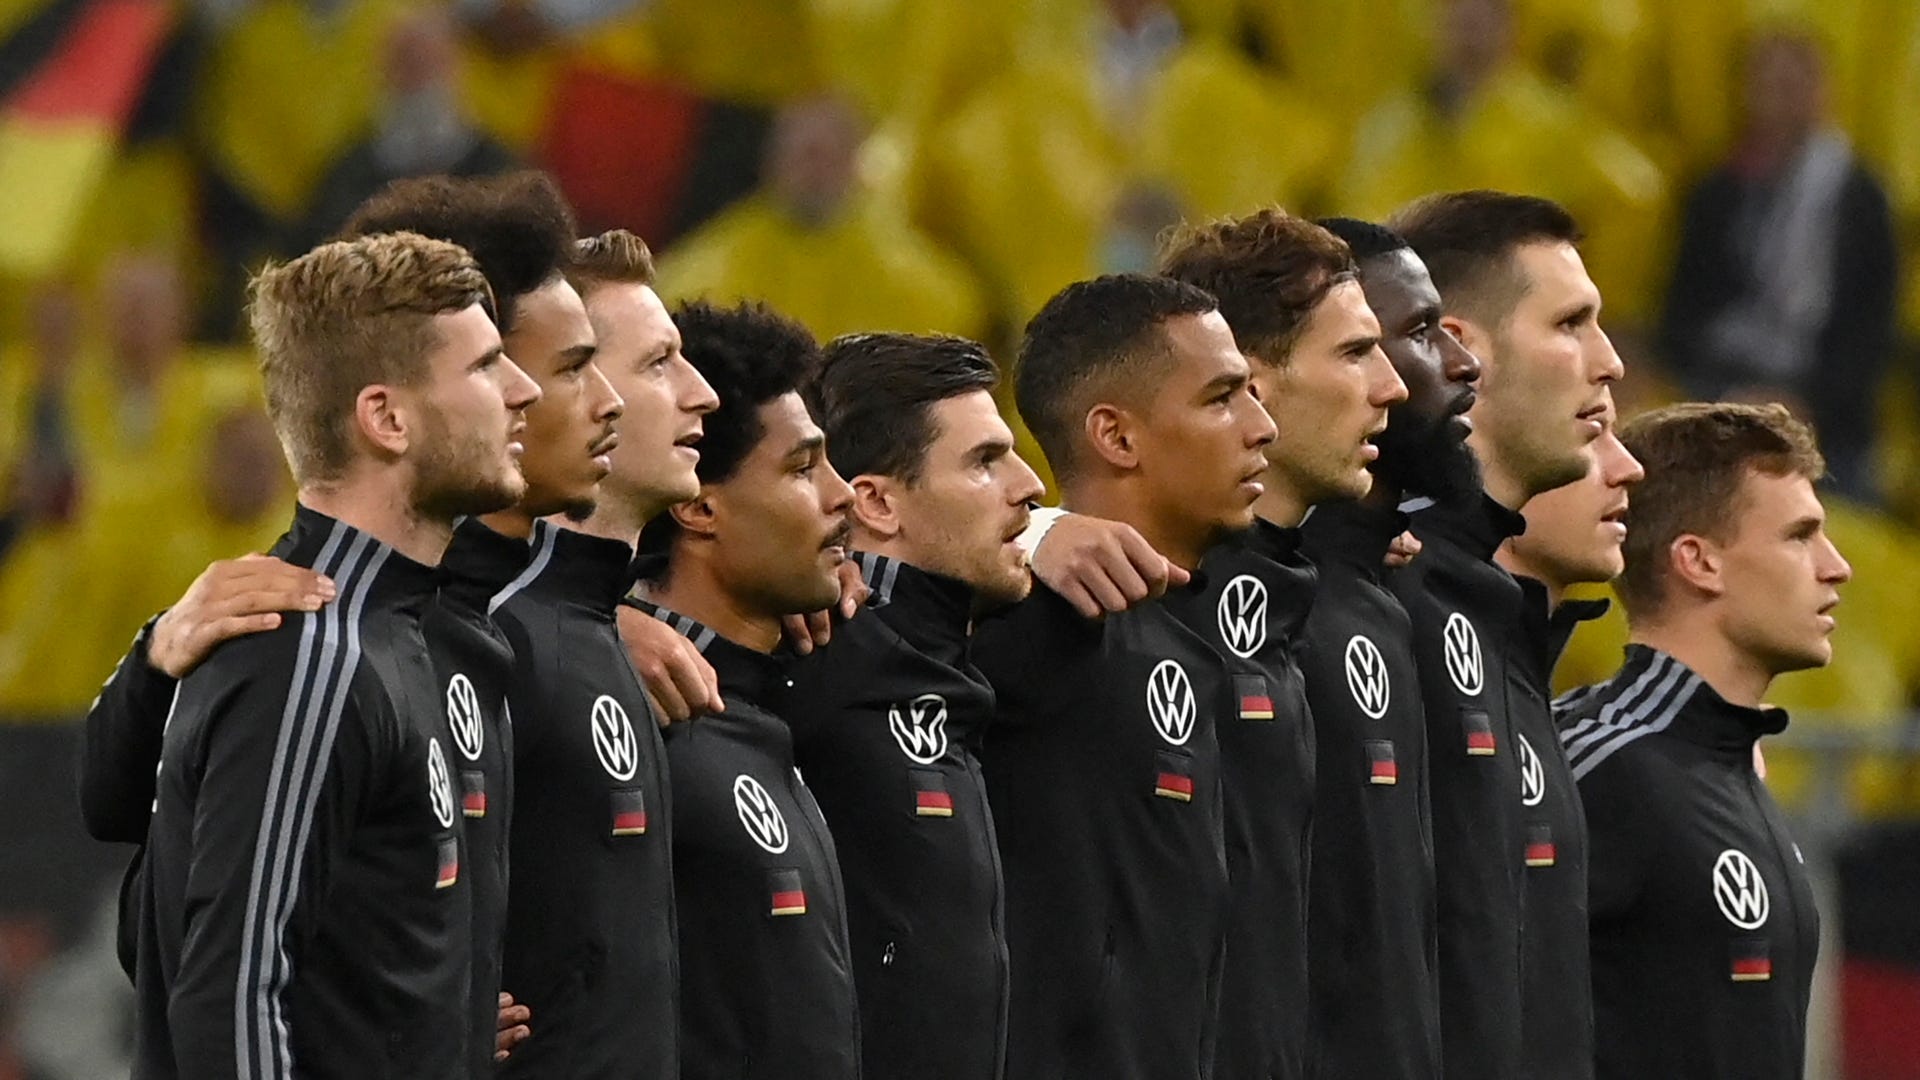 ドイツ代表 メンバー26名が発表 ヴァイグルが5年ぶりに復帰 ドルトムントからは 0 Goal Com 日本